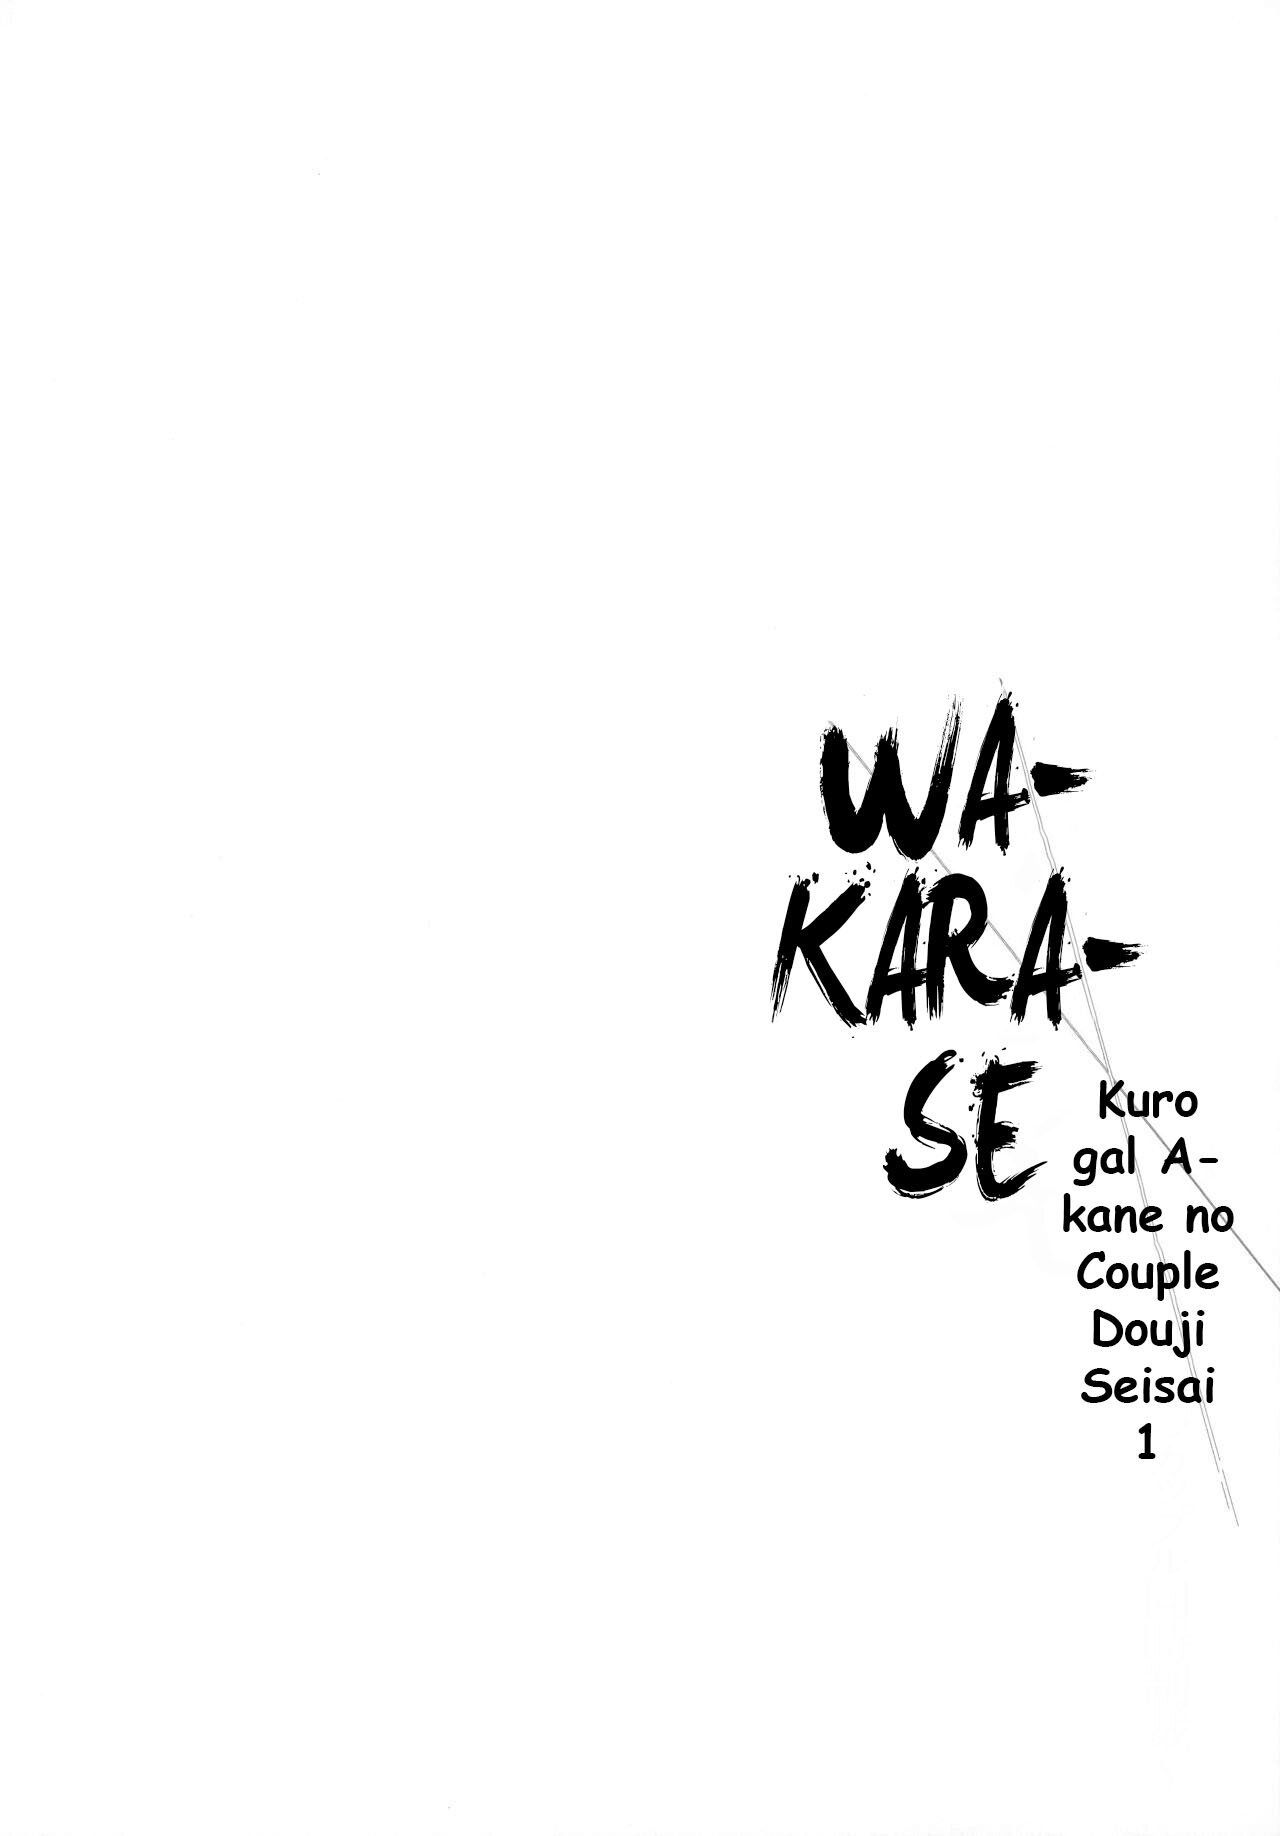 Wakarase - Kuro Gal Akane no Couple Douji Seisai 1 - 3